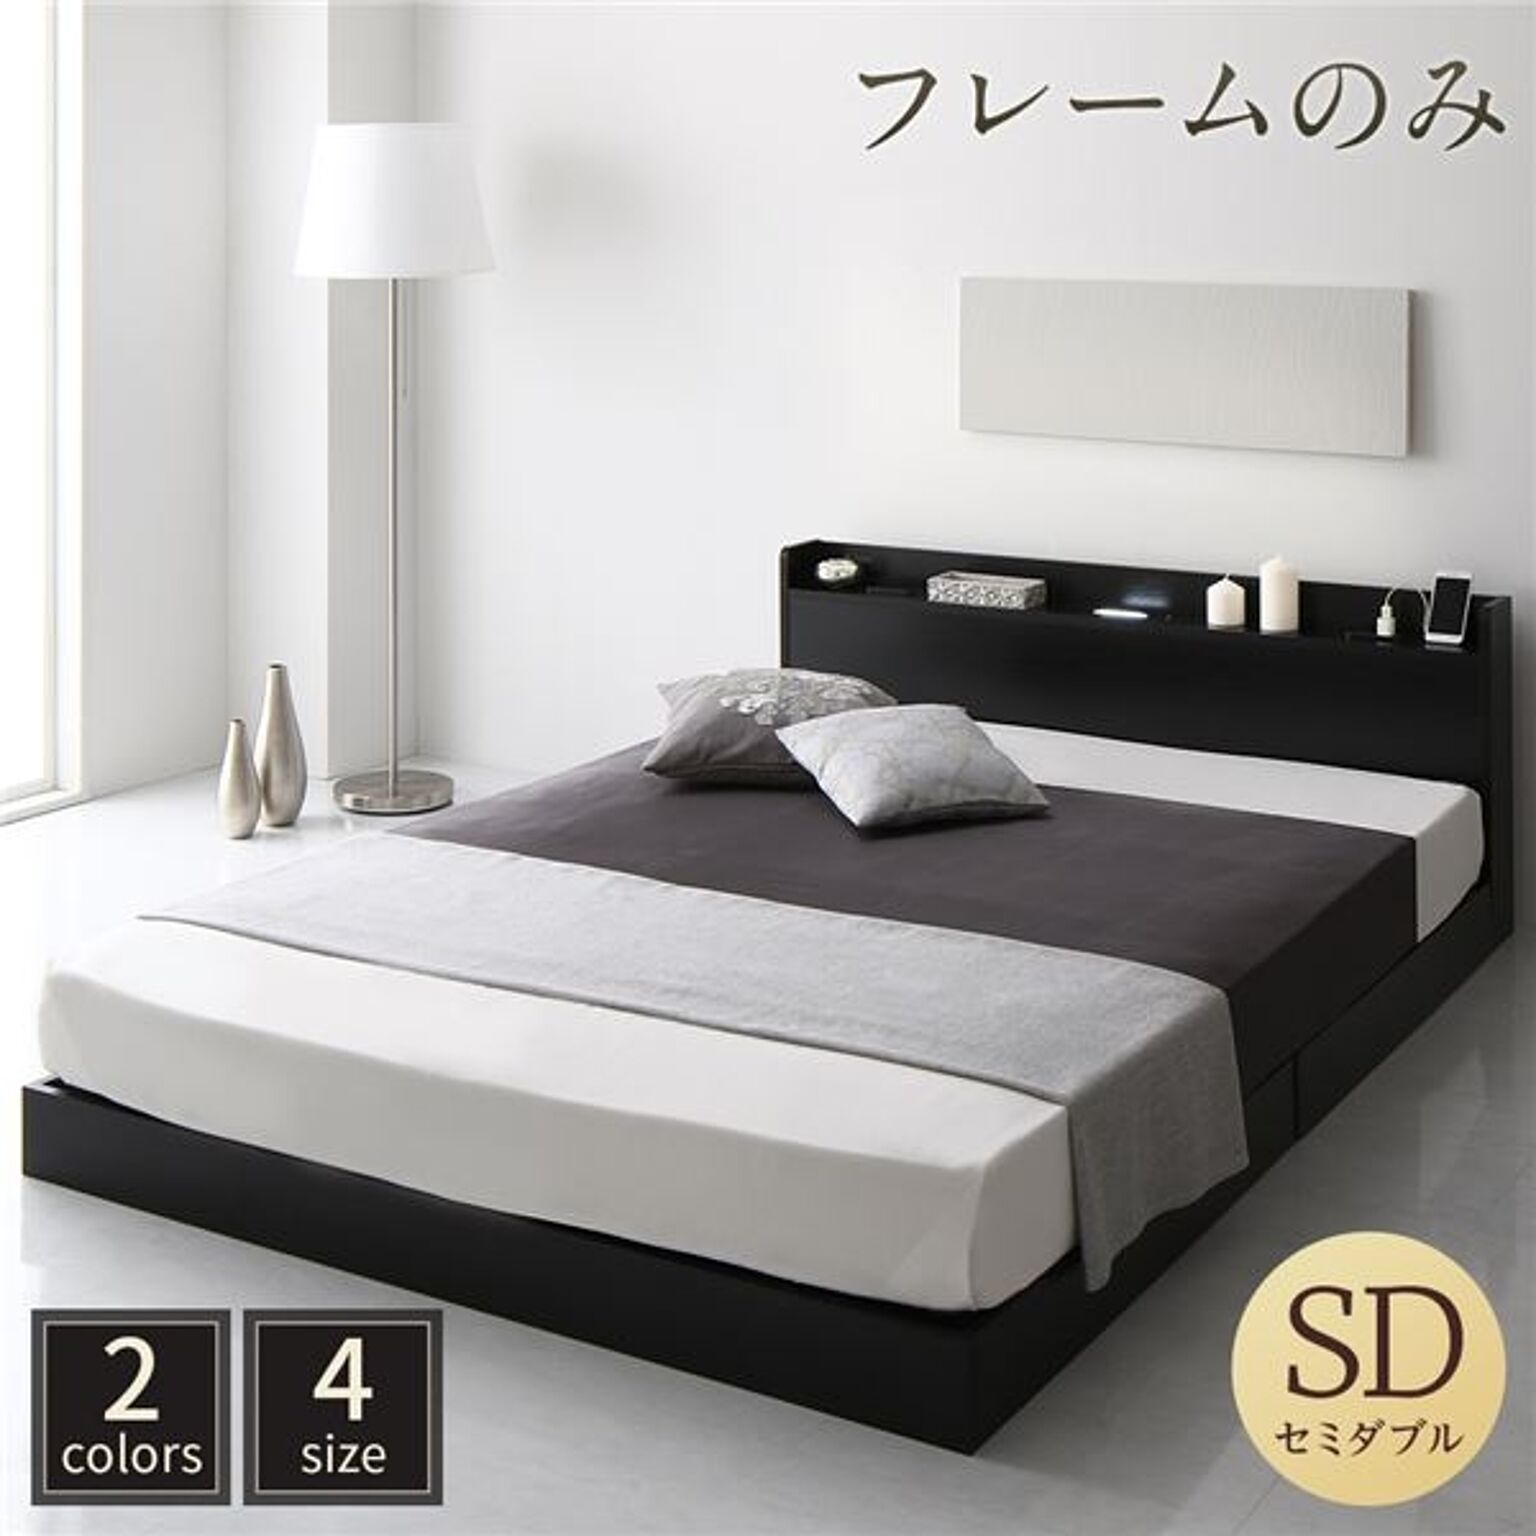 ベッド 低床 ロータイプ すのこ 木製 LED照明付き 宮付き 棚付き コンセント付き シンプル モダン ブラック セミダブル ベッドフレームのみ